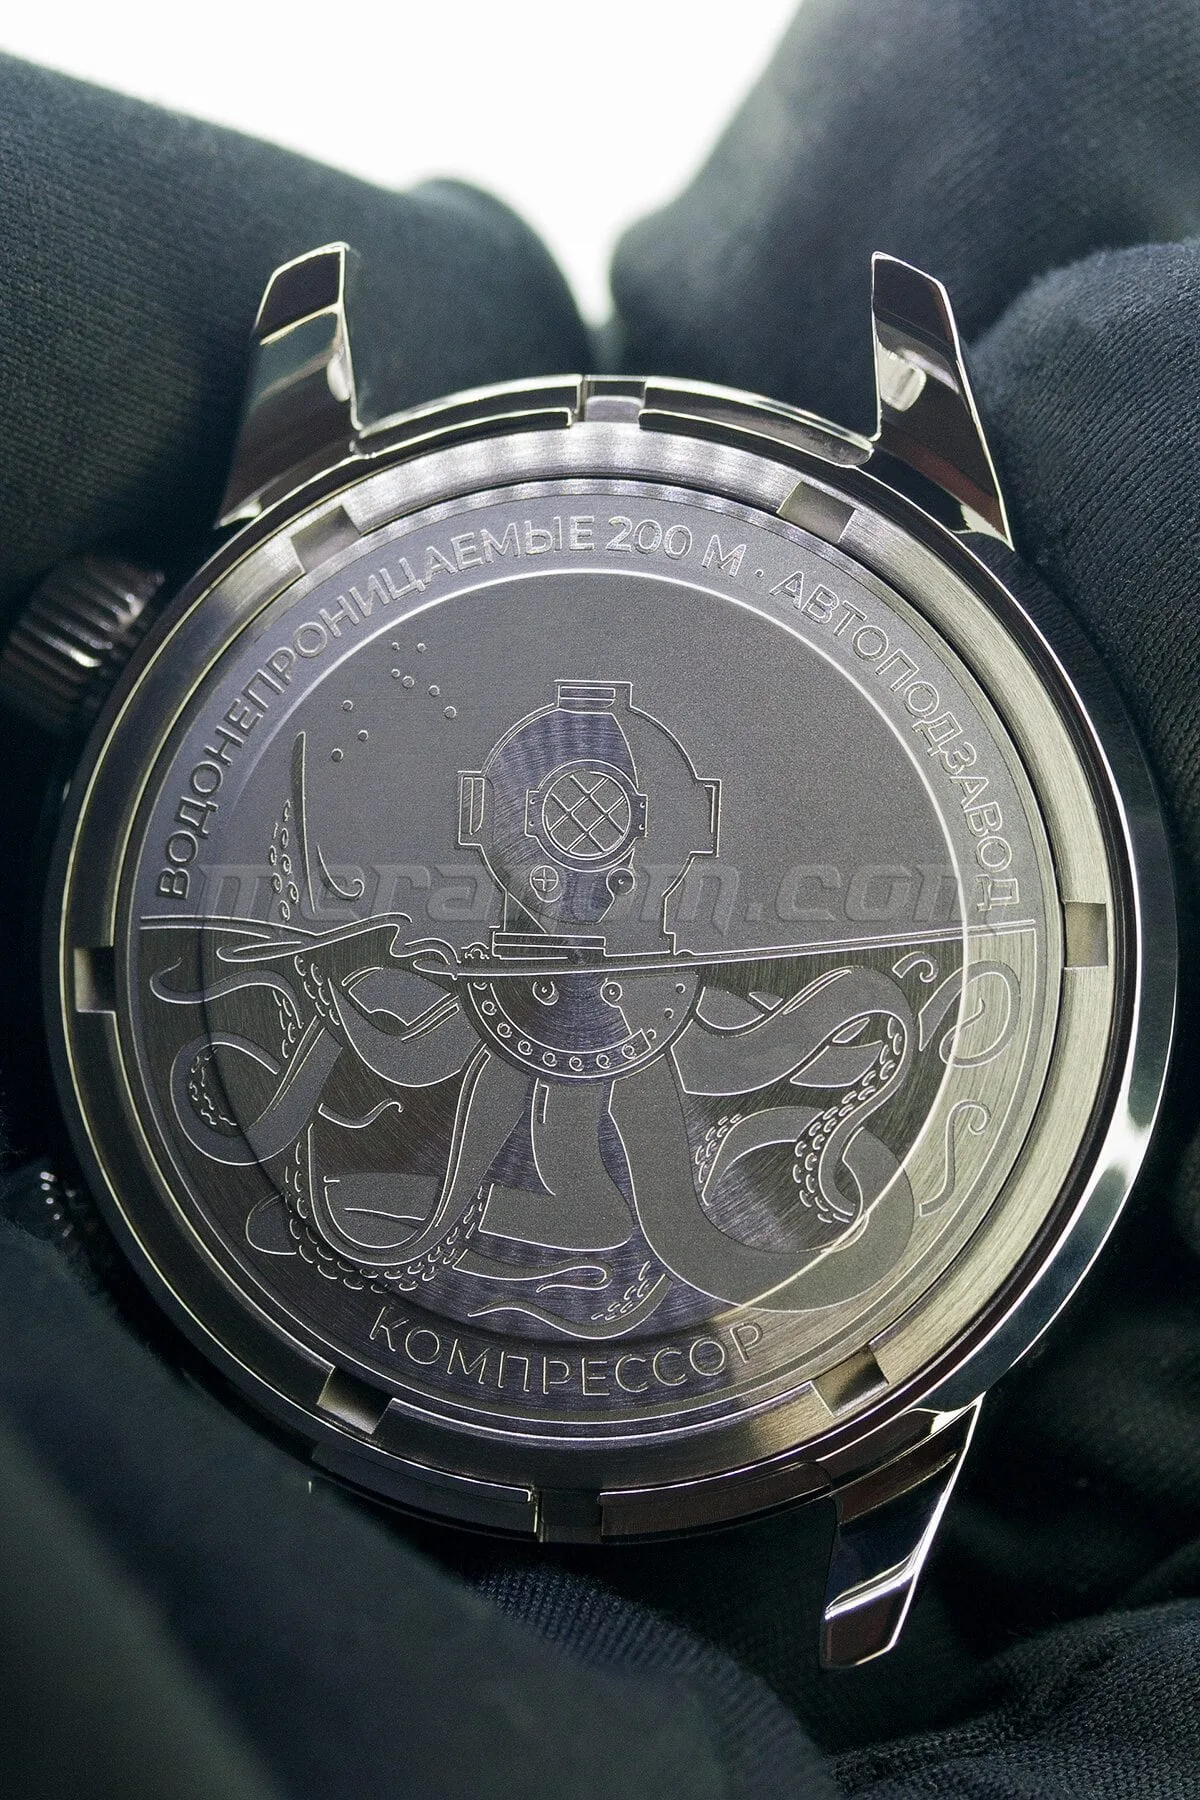 Actualités des montres non russes - Page 26 Buyalov_Compressor_case_back-1800x1800.jpg